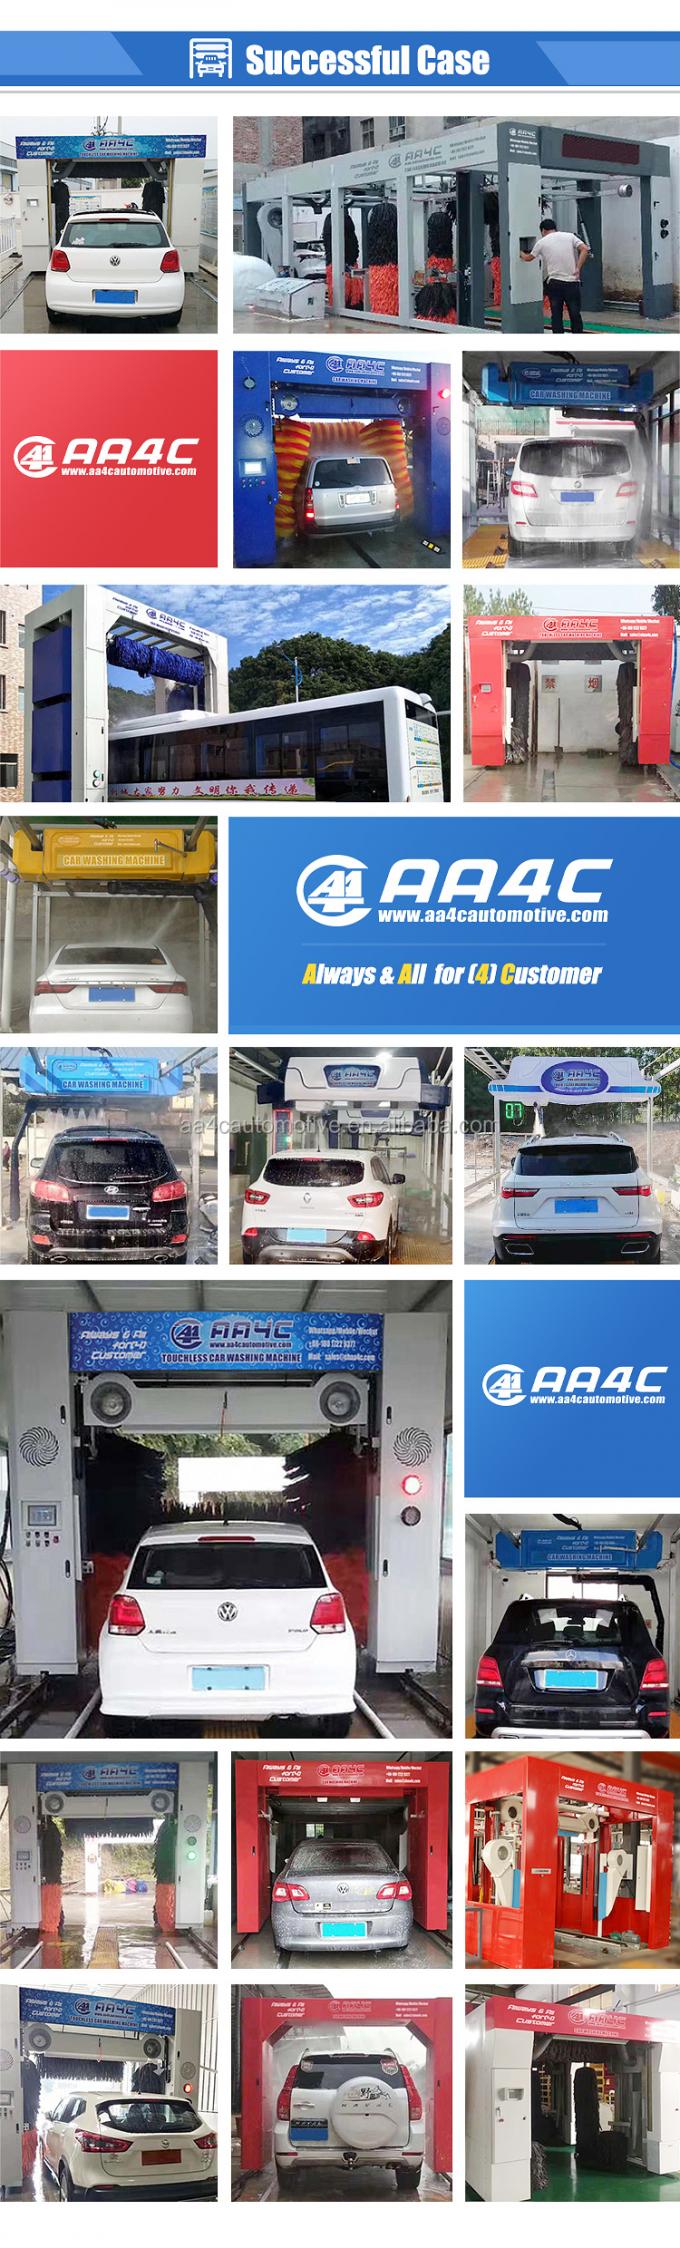 AA4C 5はroll-over車の洗濯機自動車の洗濯機のカー ウォッシュ システムにブラシをかける